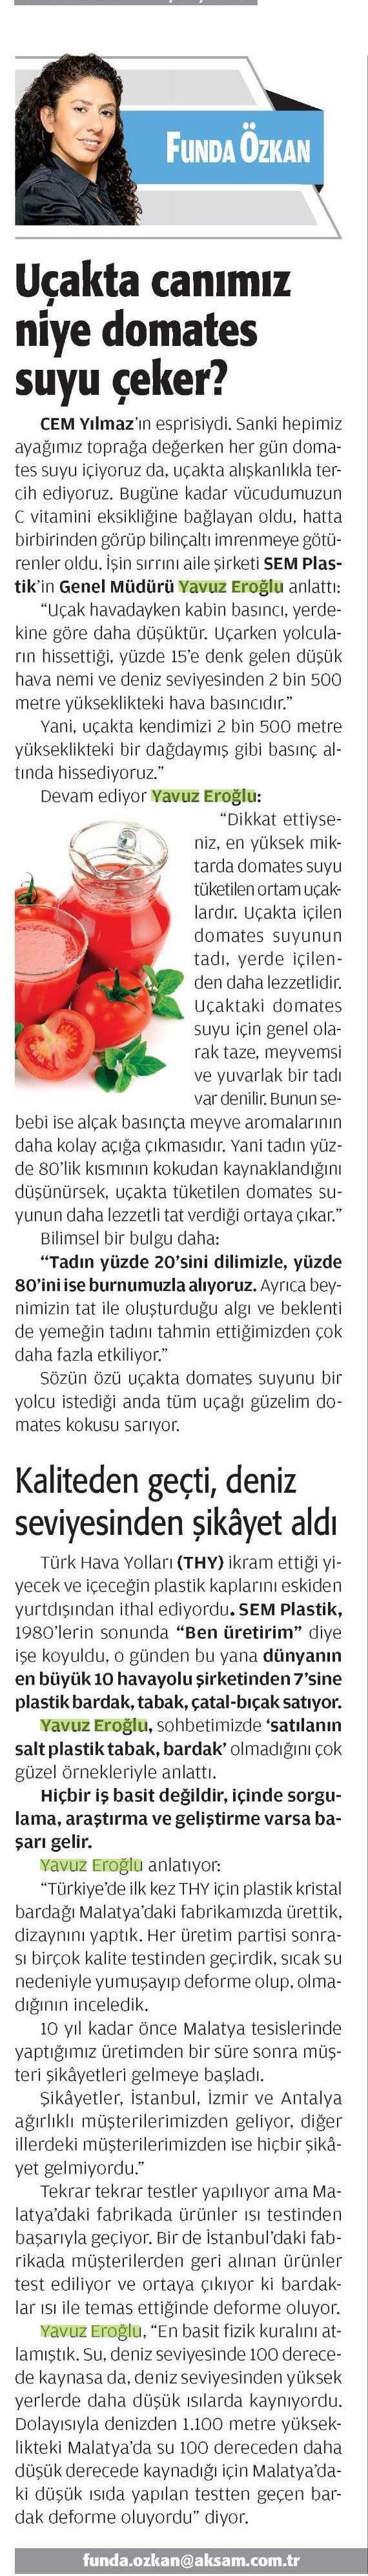 Akşam Gazetesi Yazarı Funda Özkan 20.08.2014 tarihli köşesinde SEM Plastik'in havacılık tecrübelerini kaleme aldı.